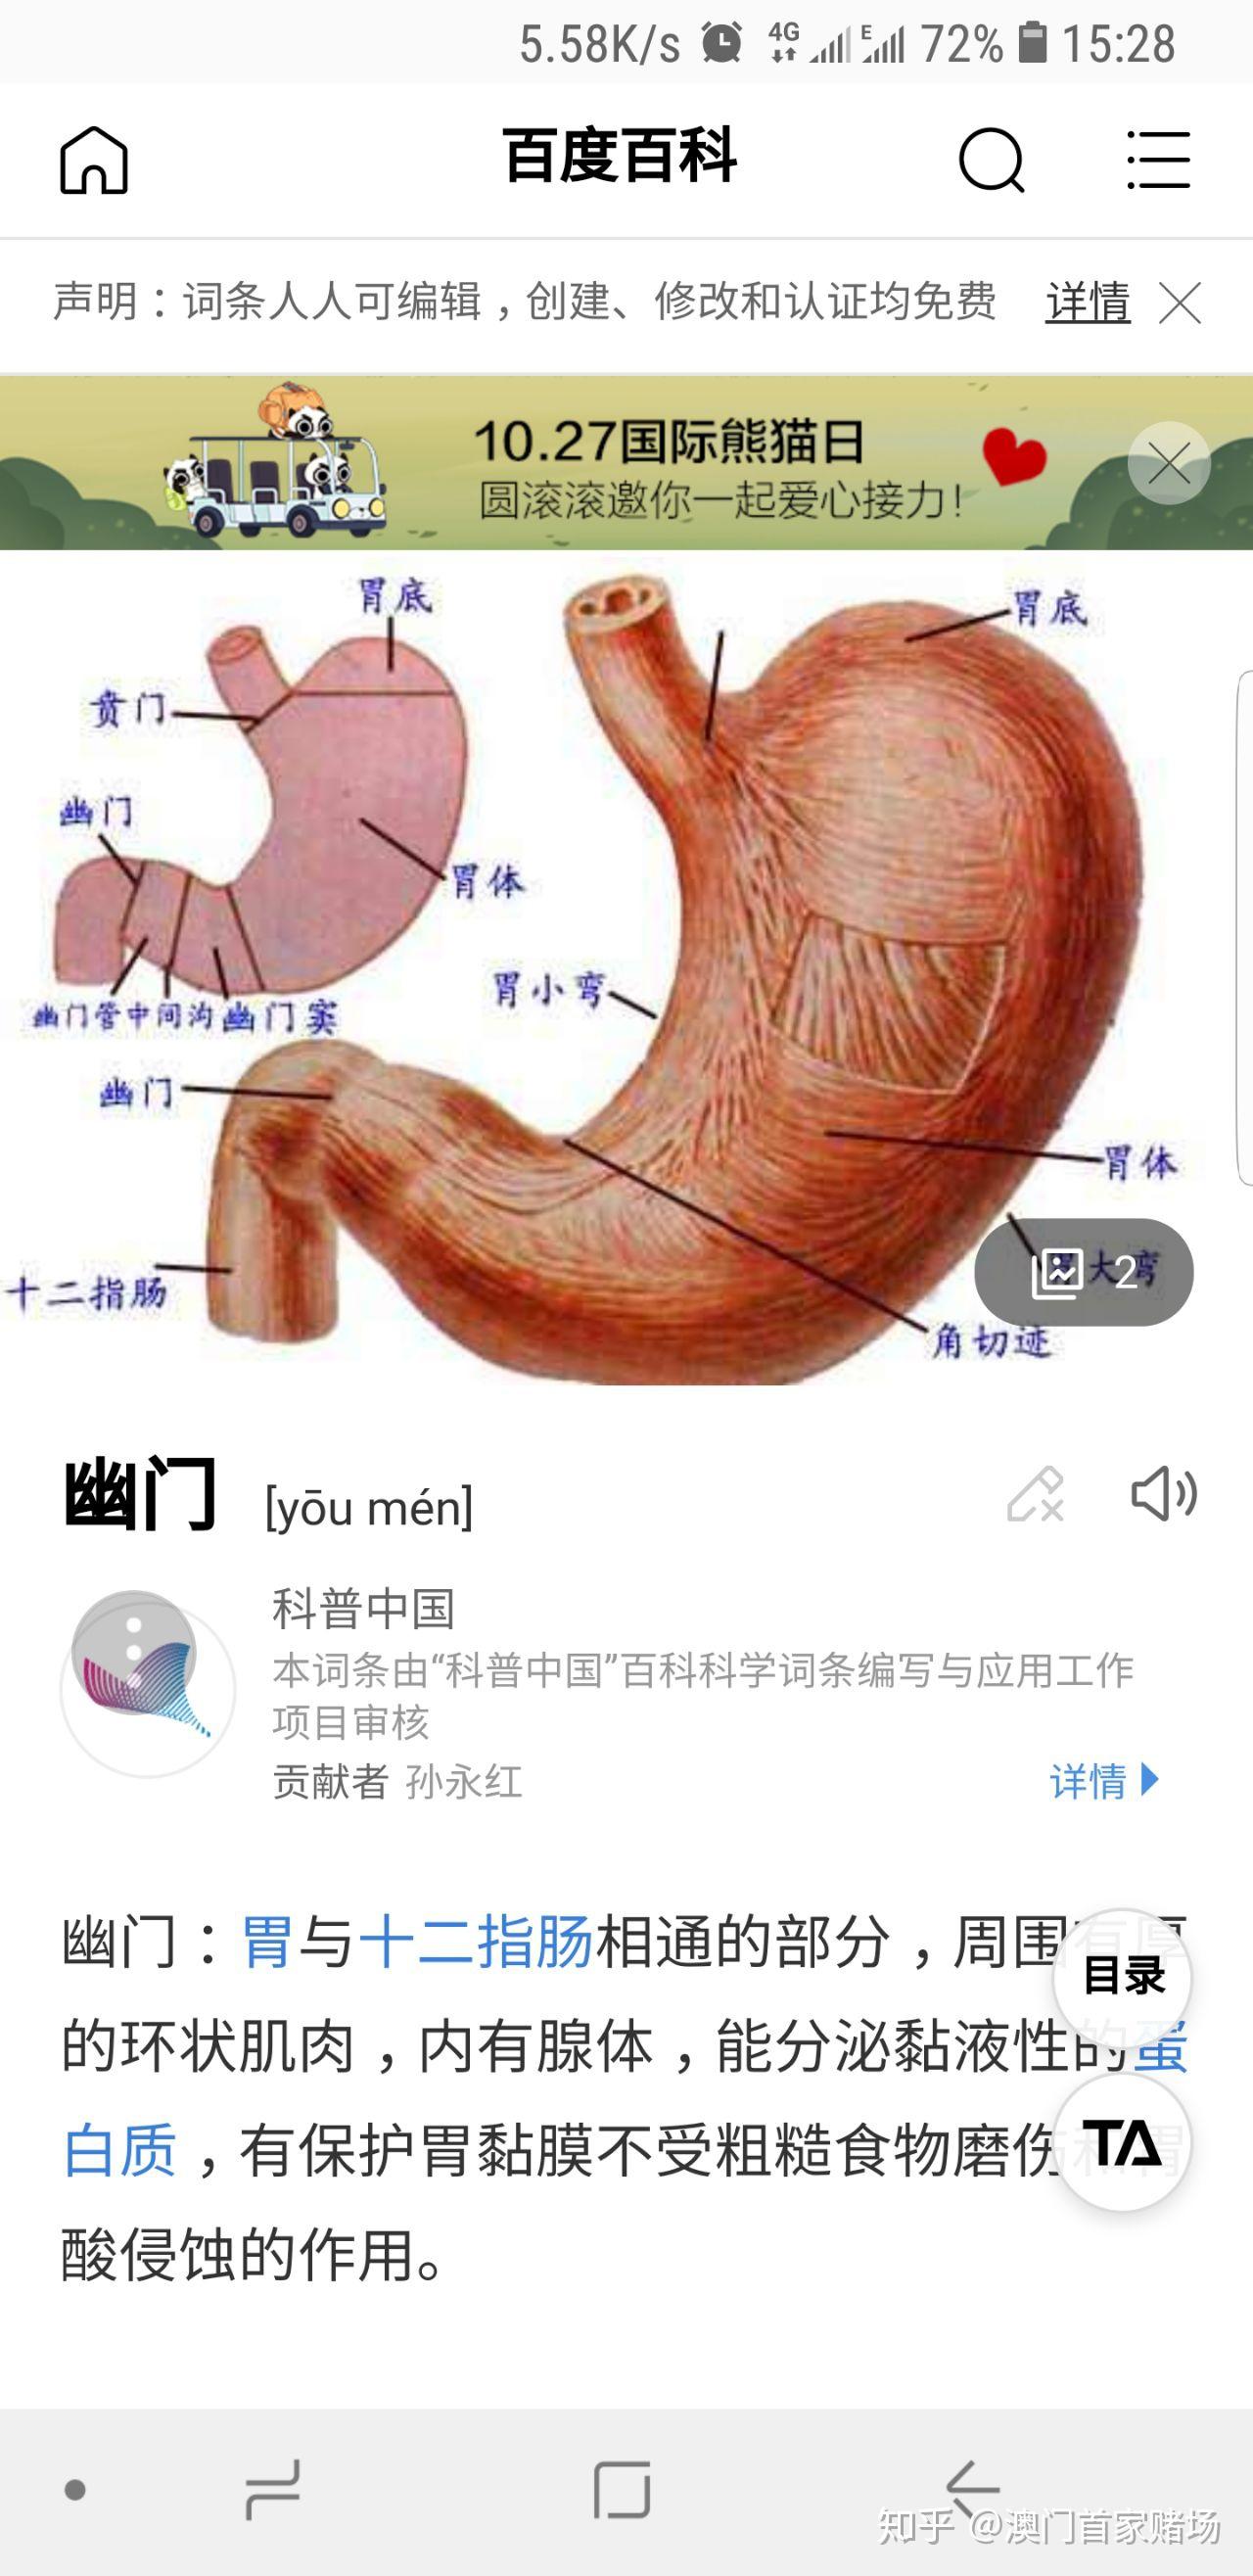 胃的幽门口的位置图图片